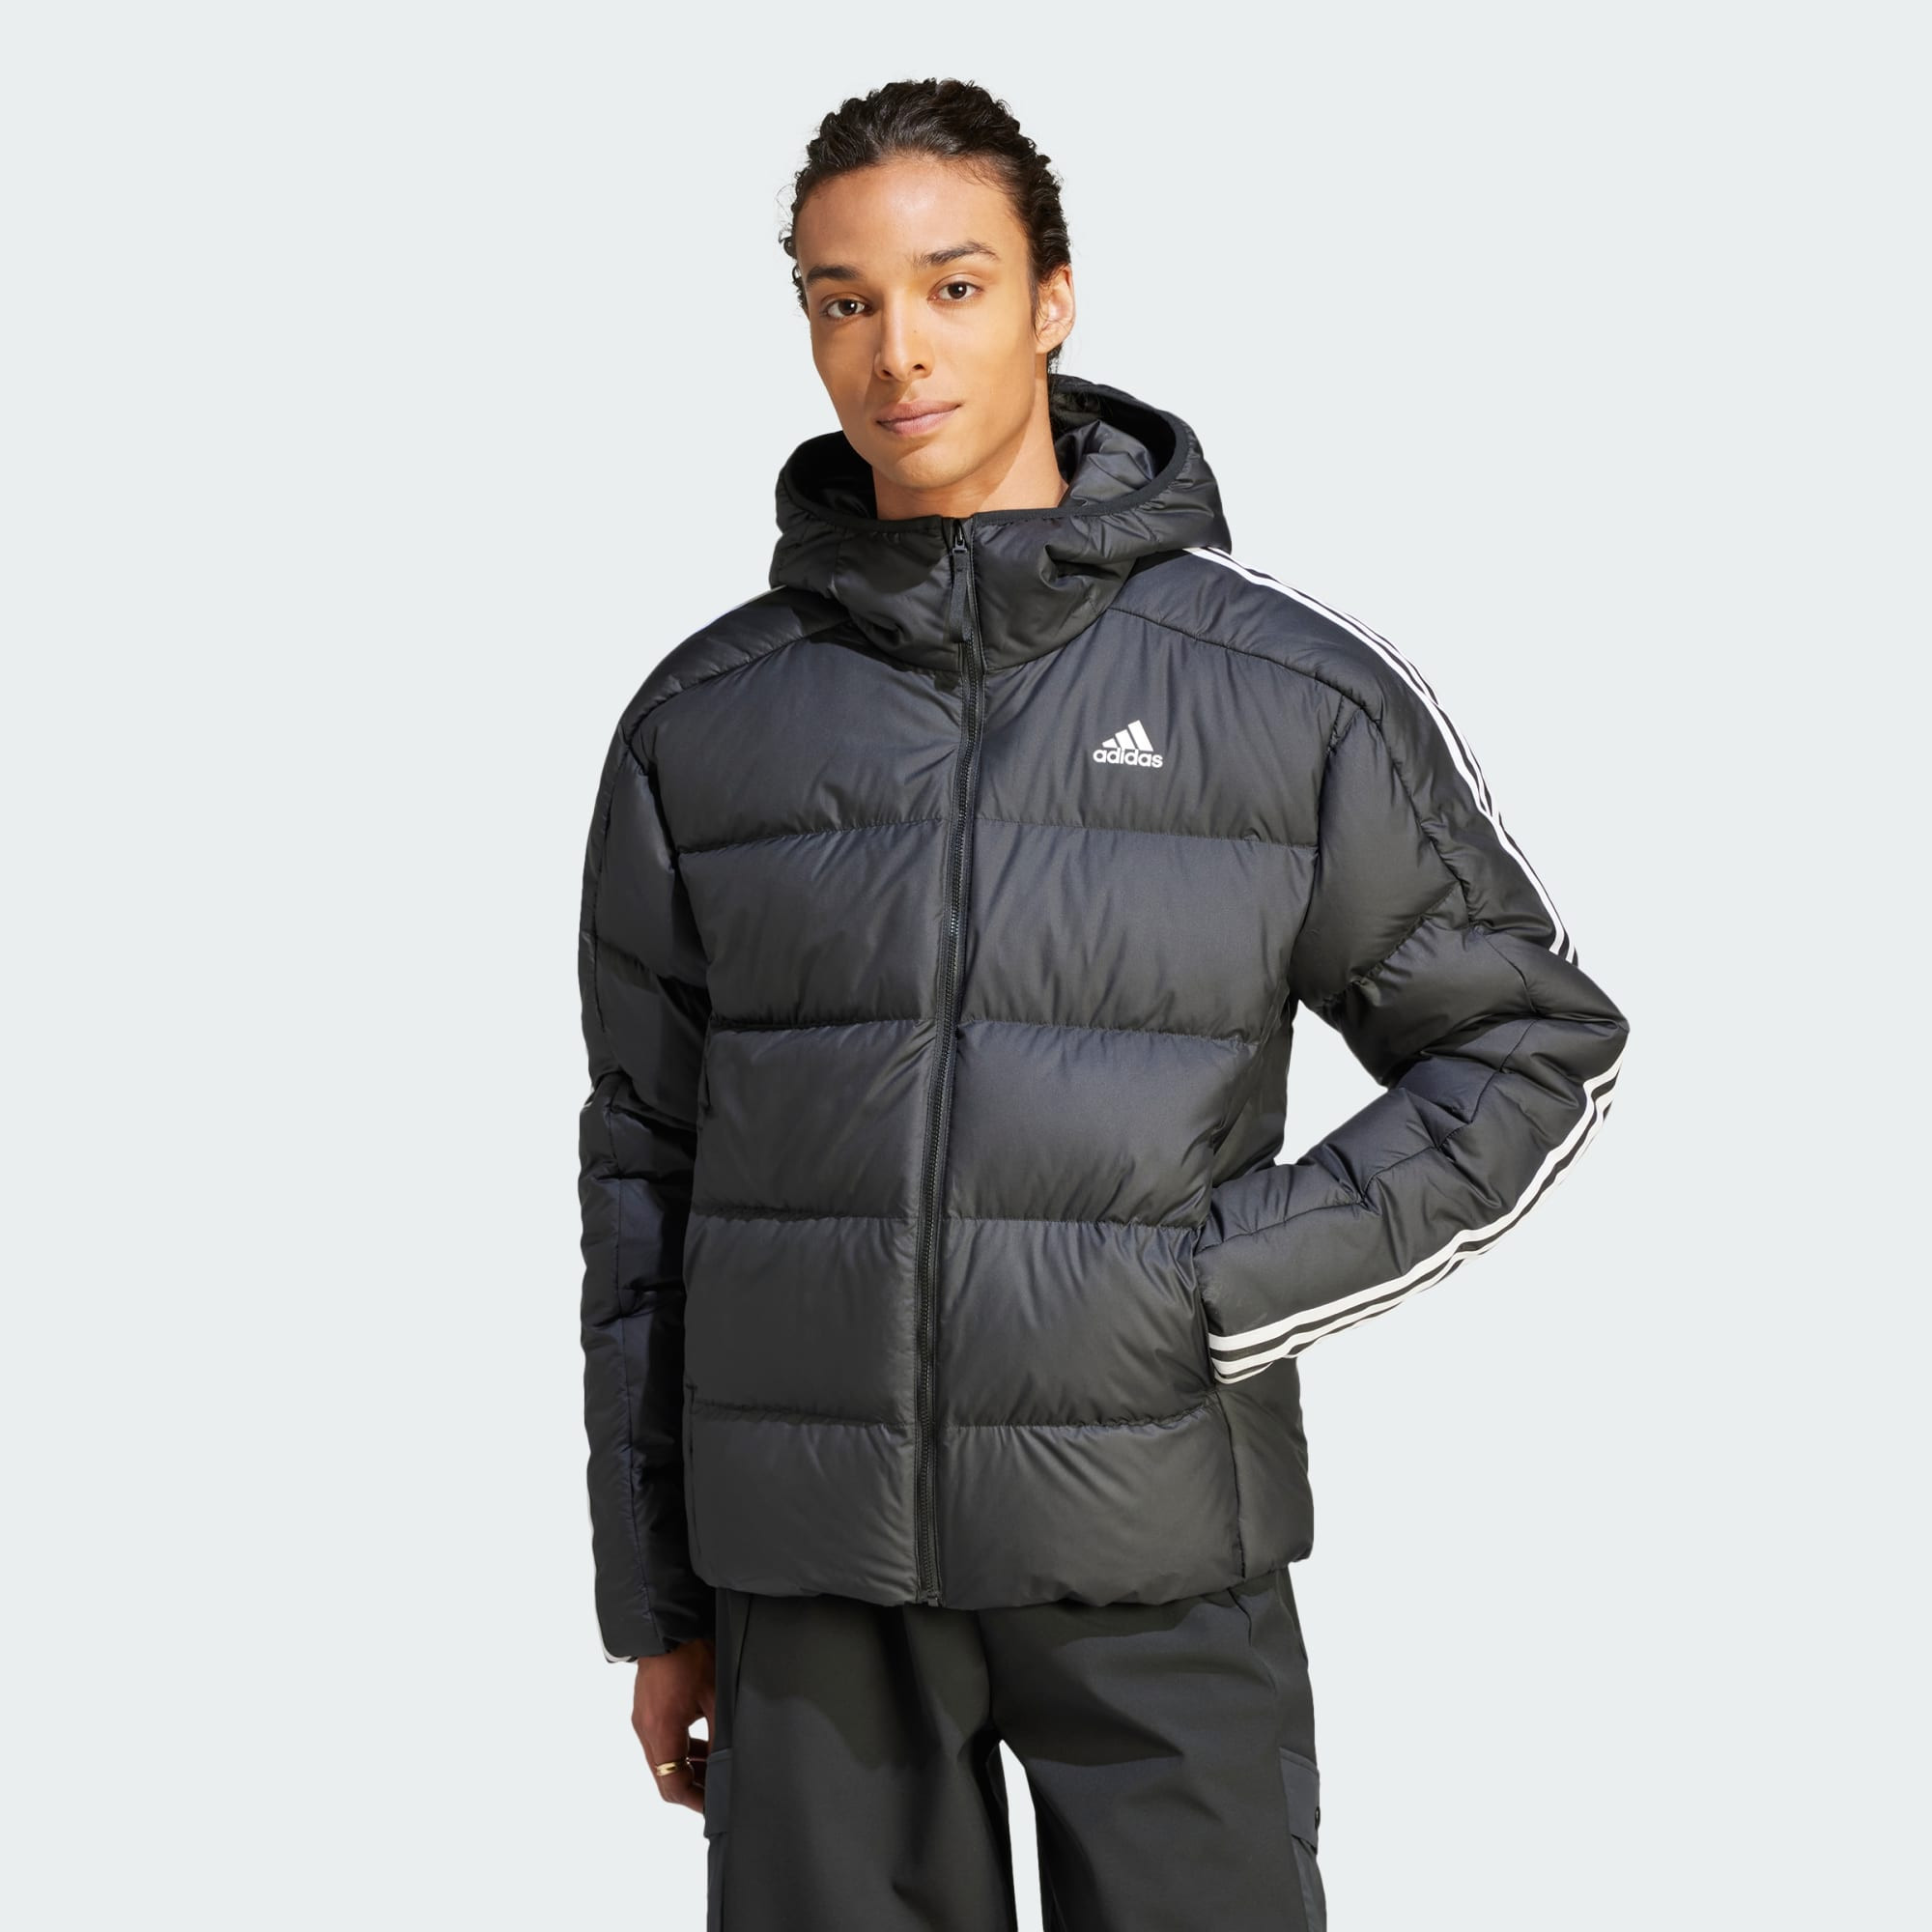 Adidas. Neo label warm up jacket. Mens Med | eBay